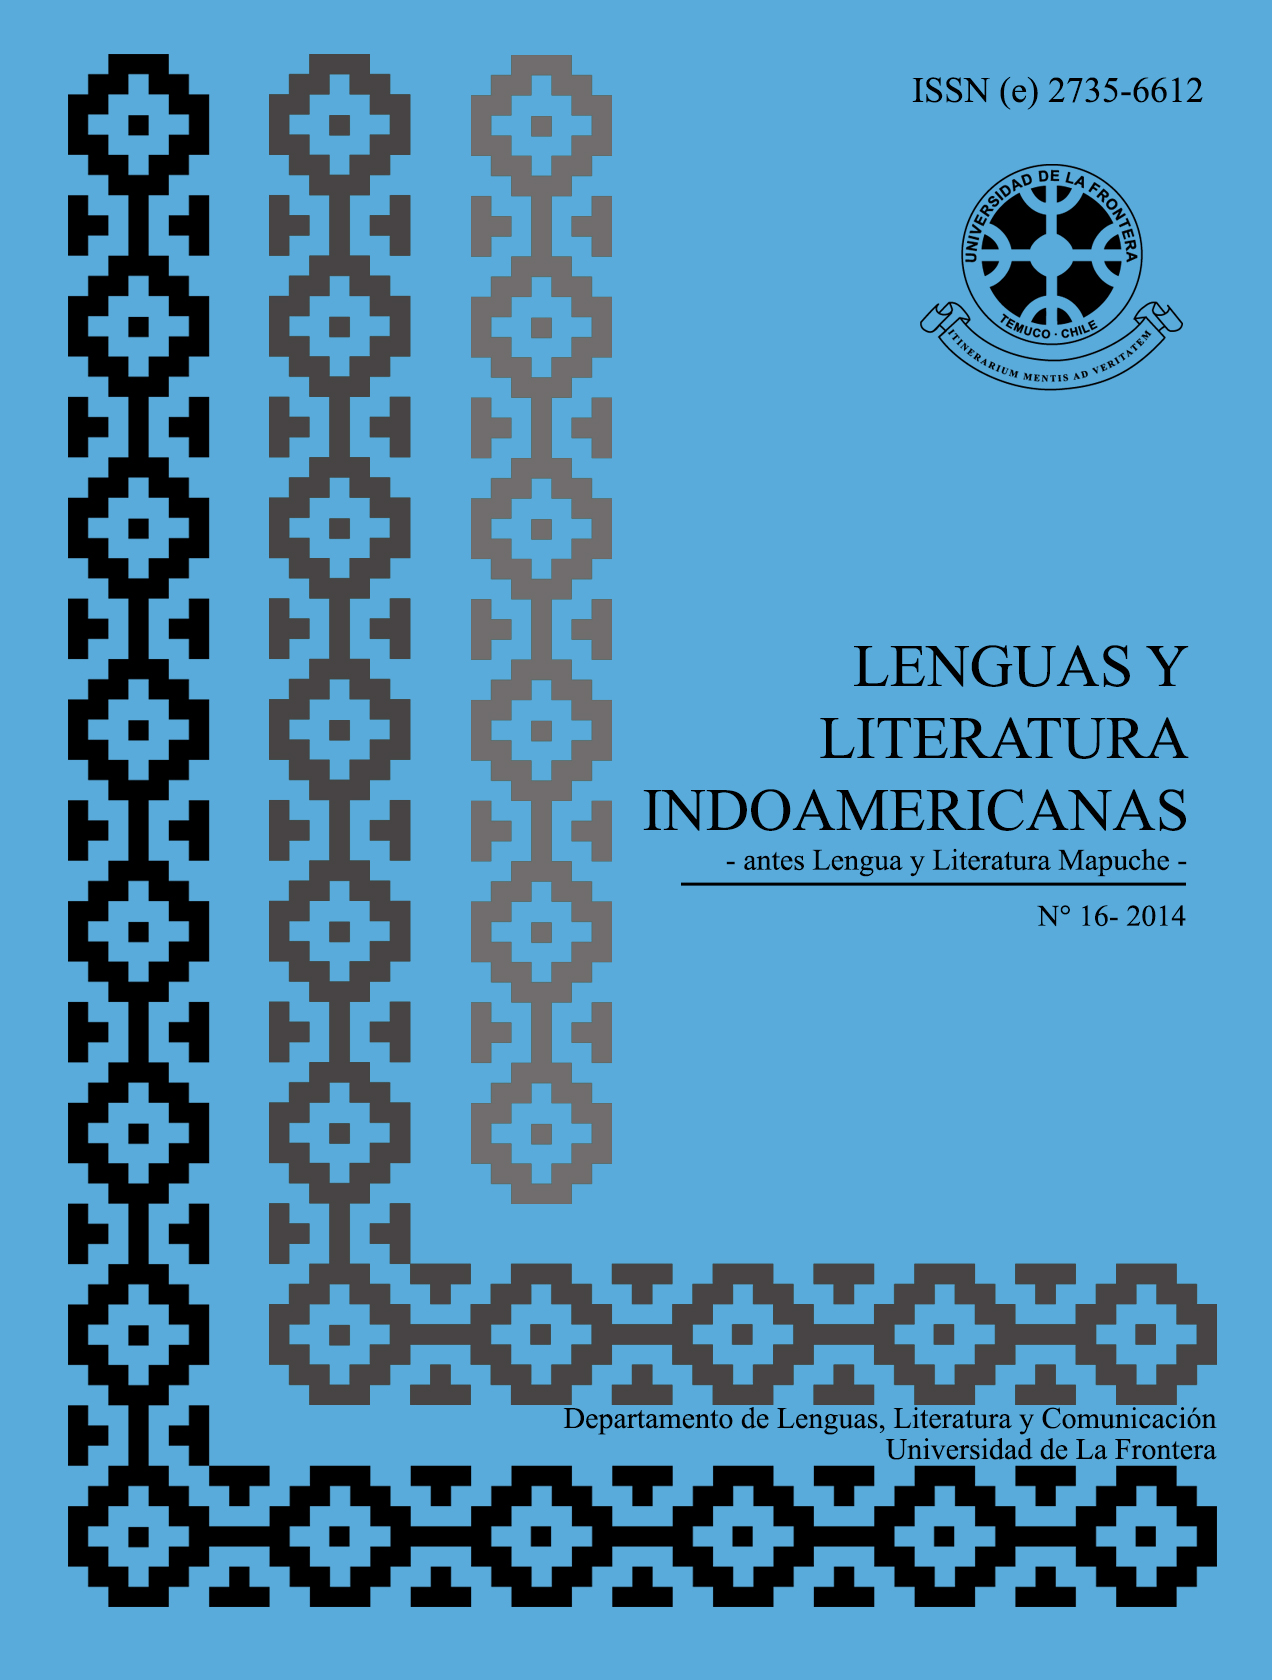 					Ver Vol. 16 Núm. 1 (2014): Revista de Lenguas y Literatura Indoamericanas (RLLI)
				